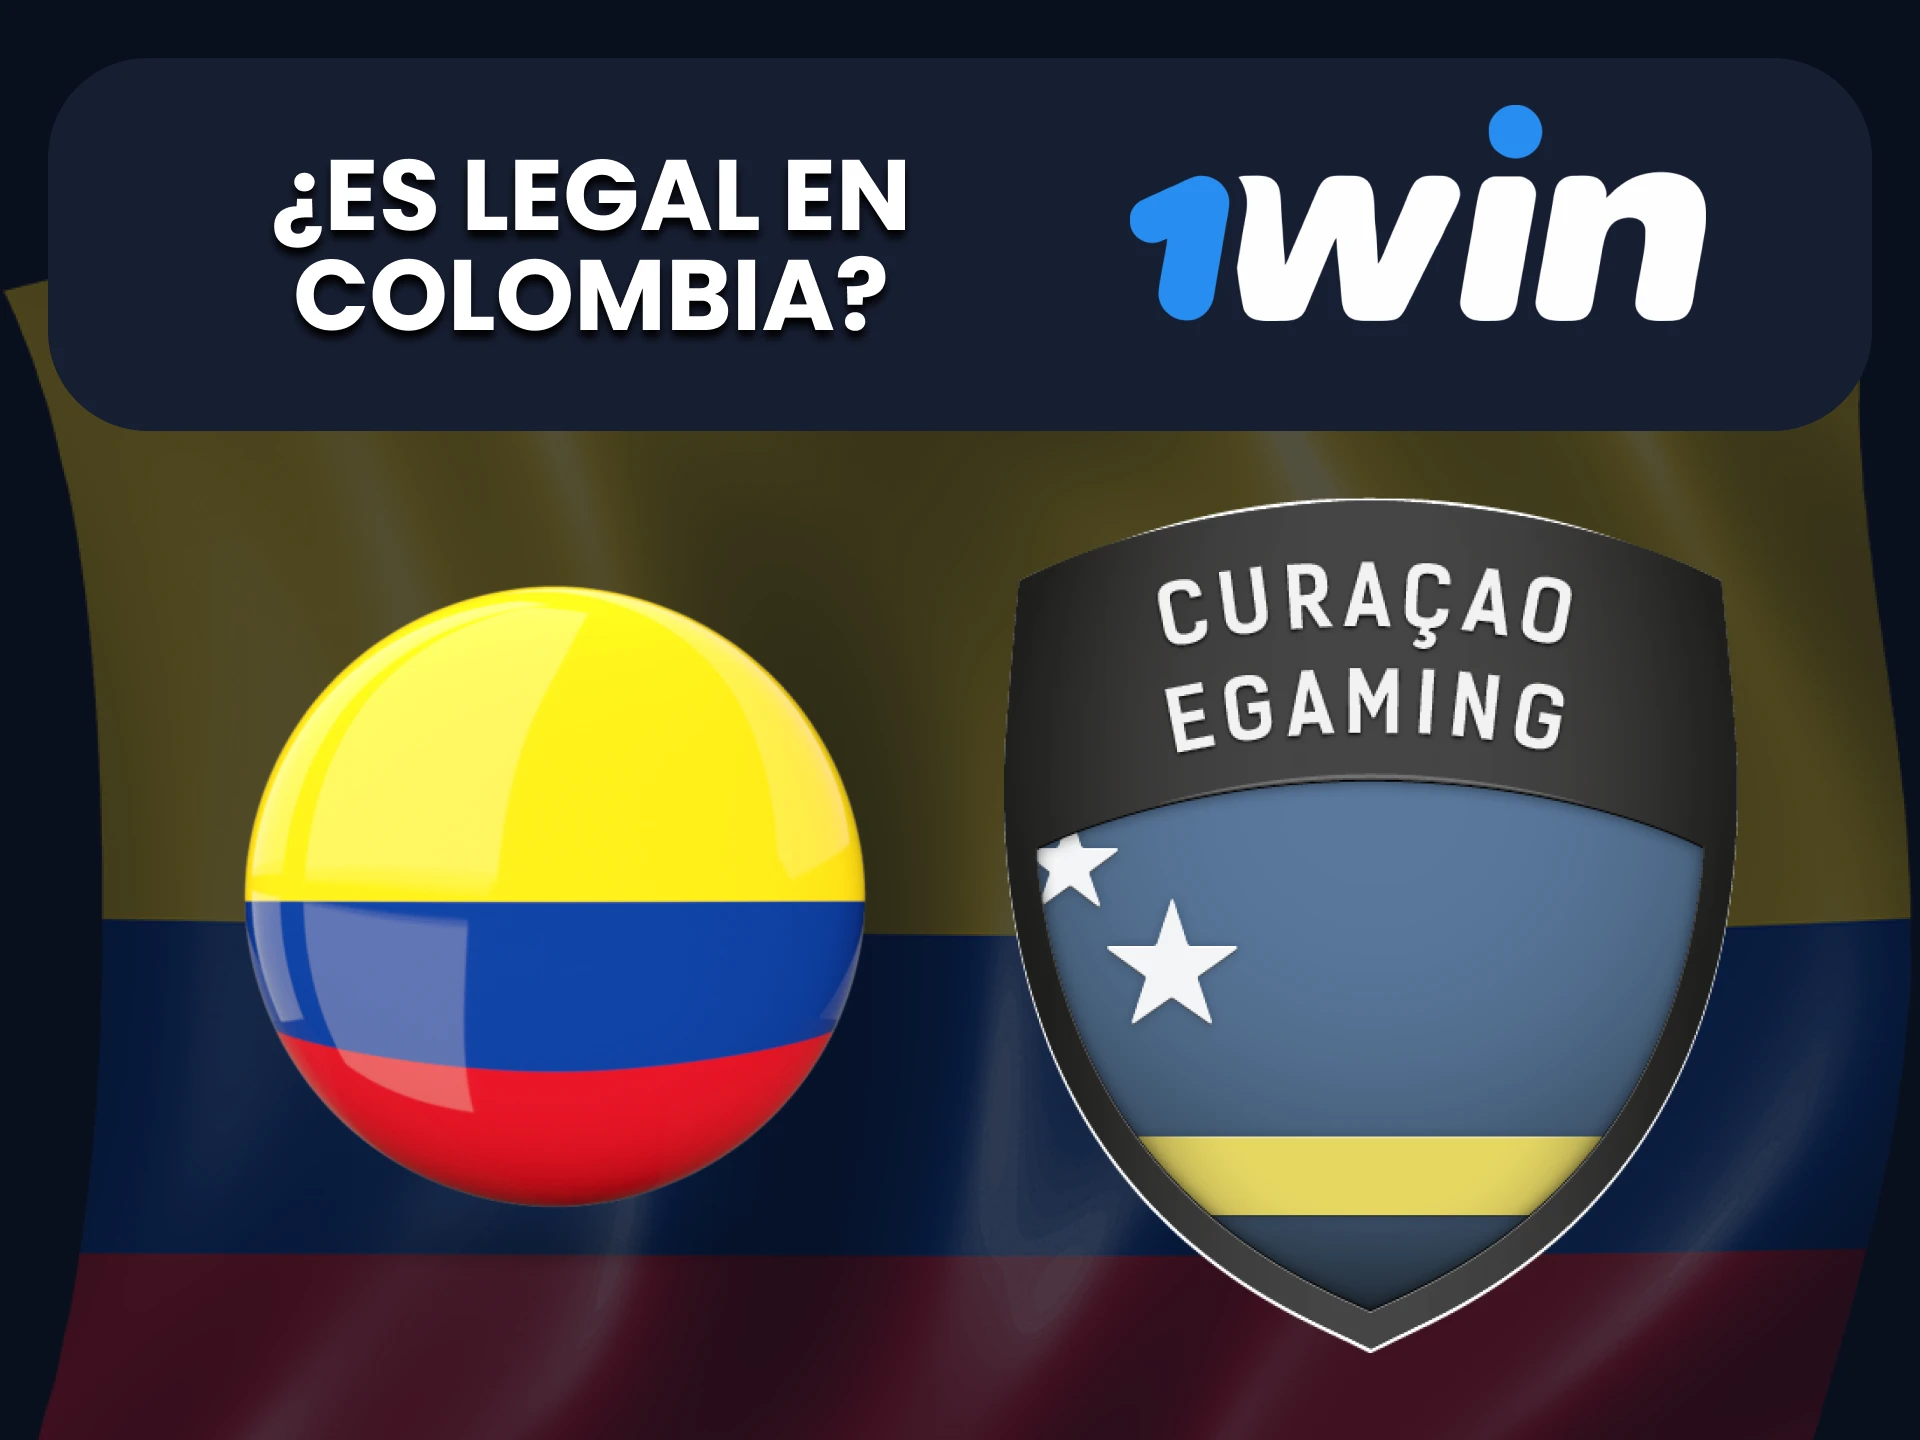 1win es legal para usuarios de Colombia.